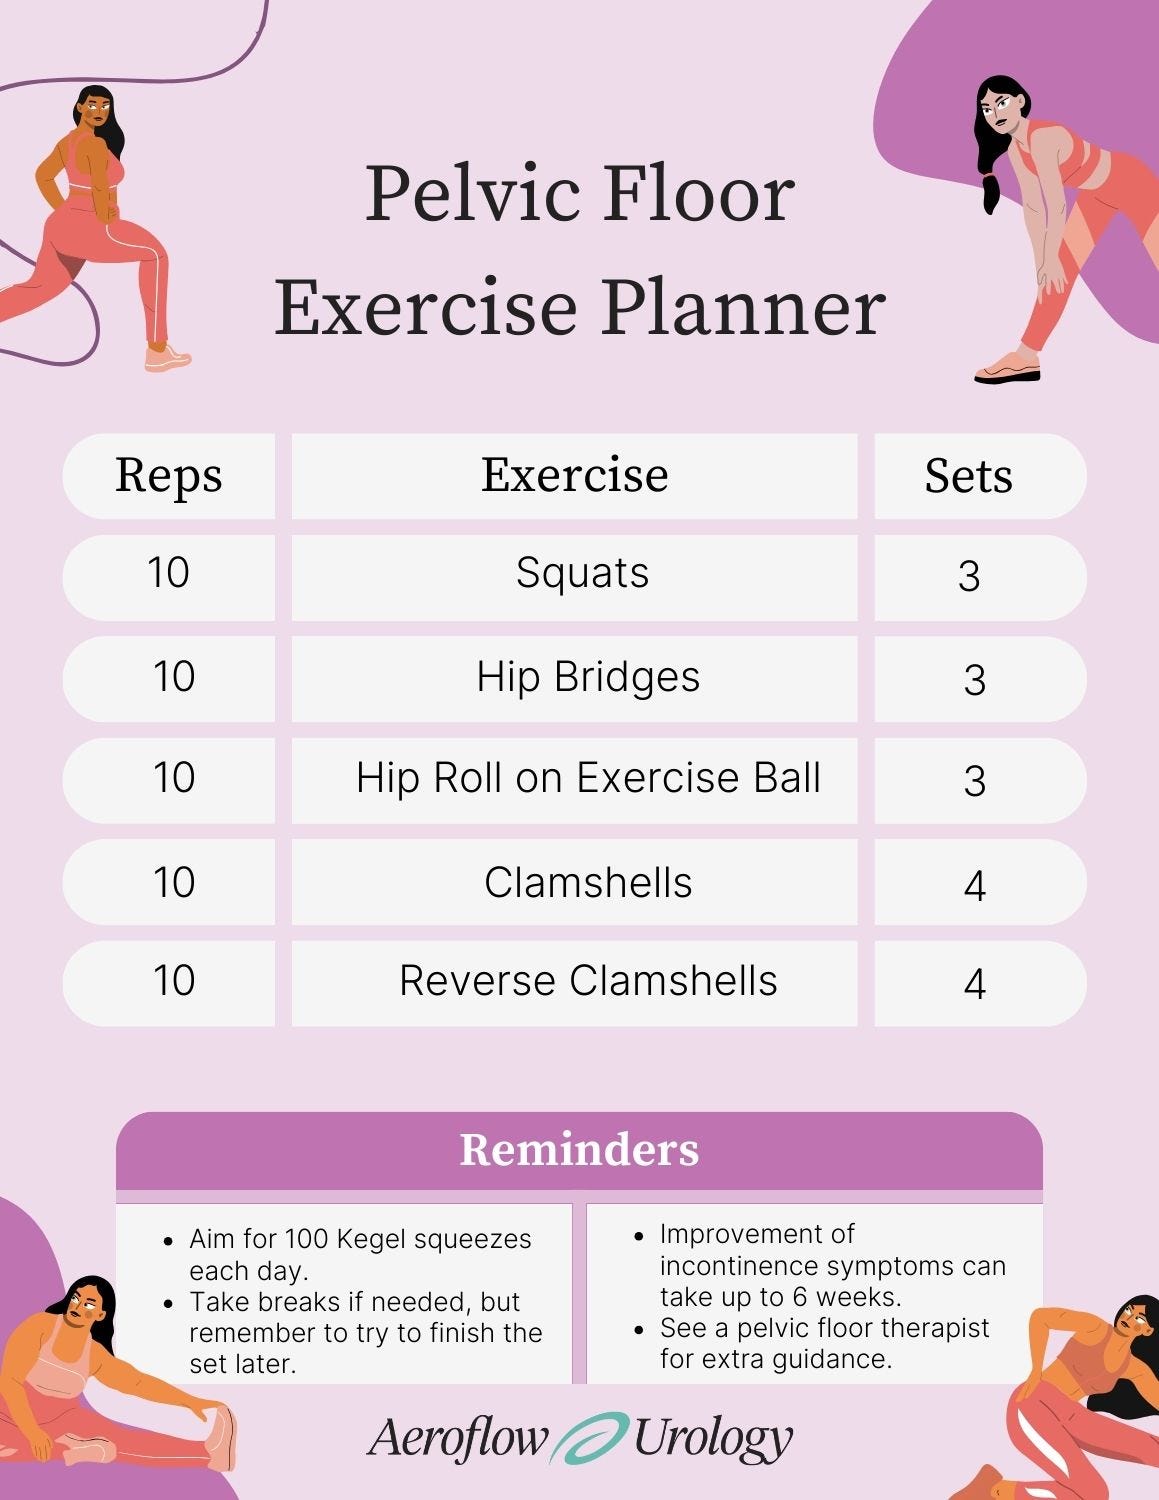 Checklist for pelvic floor exercises for women